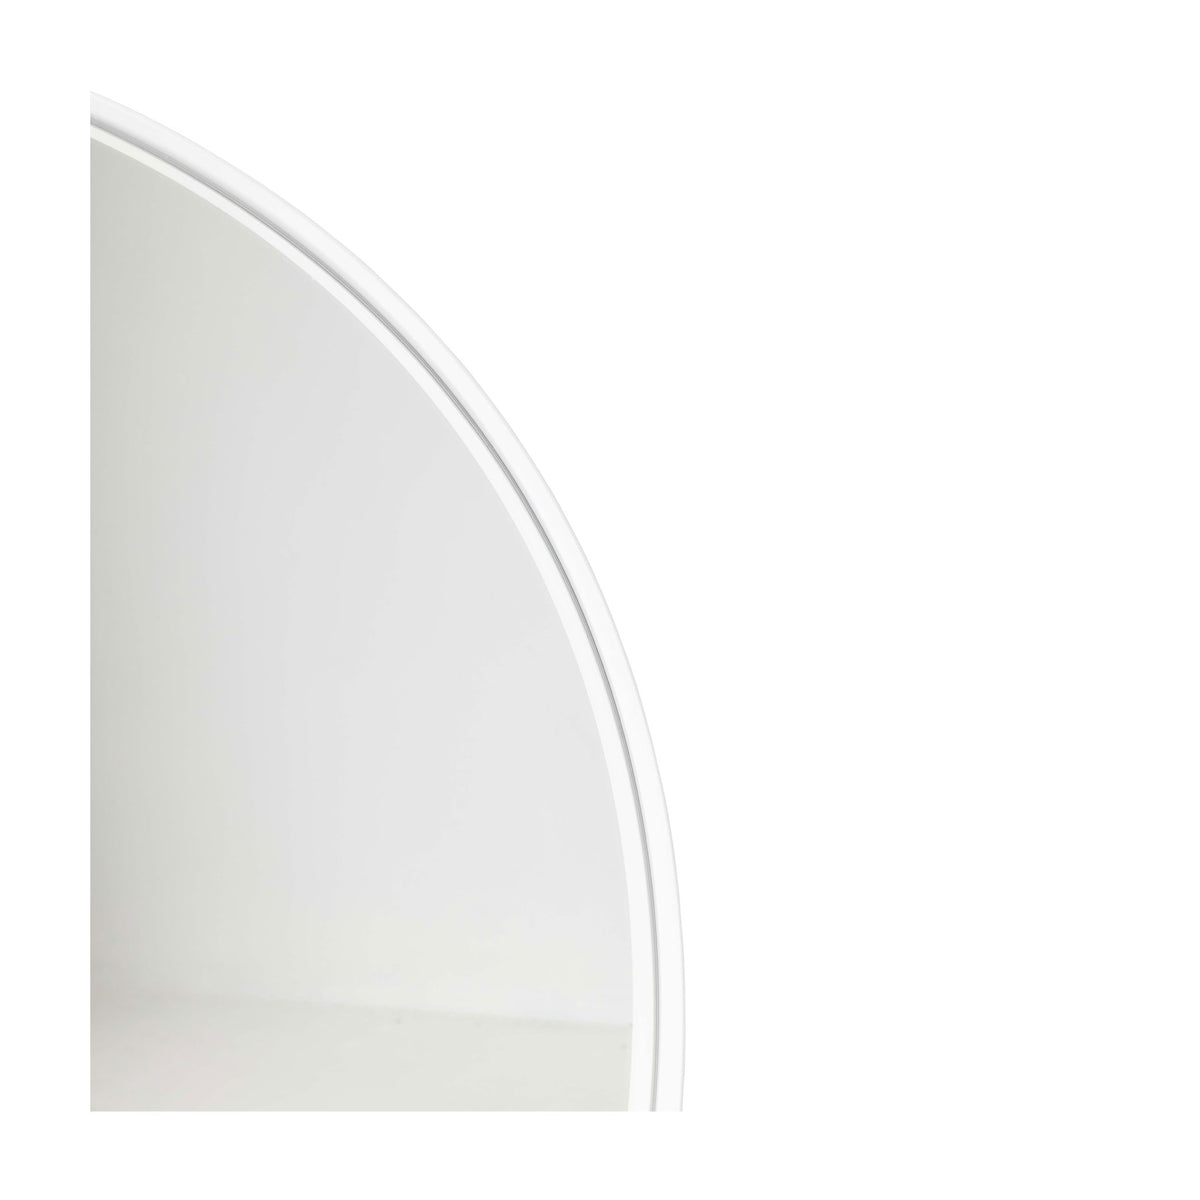 Barcelona White Round Mirror - 800mm